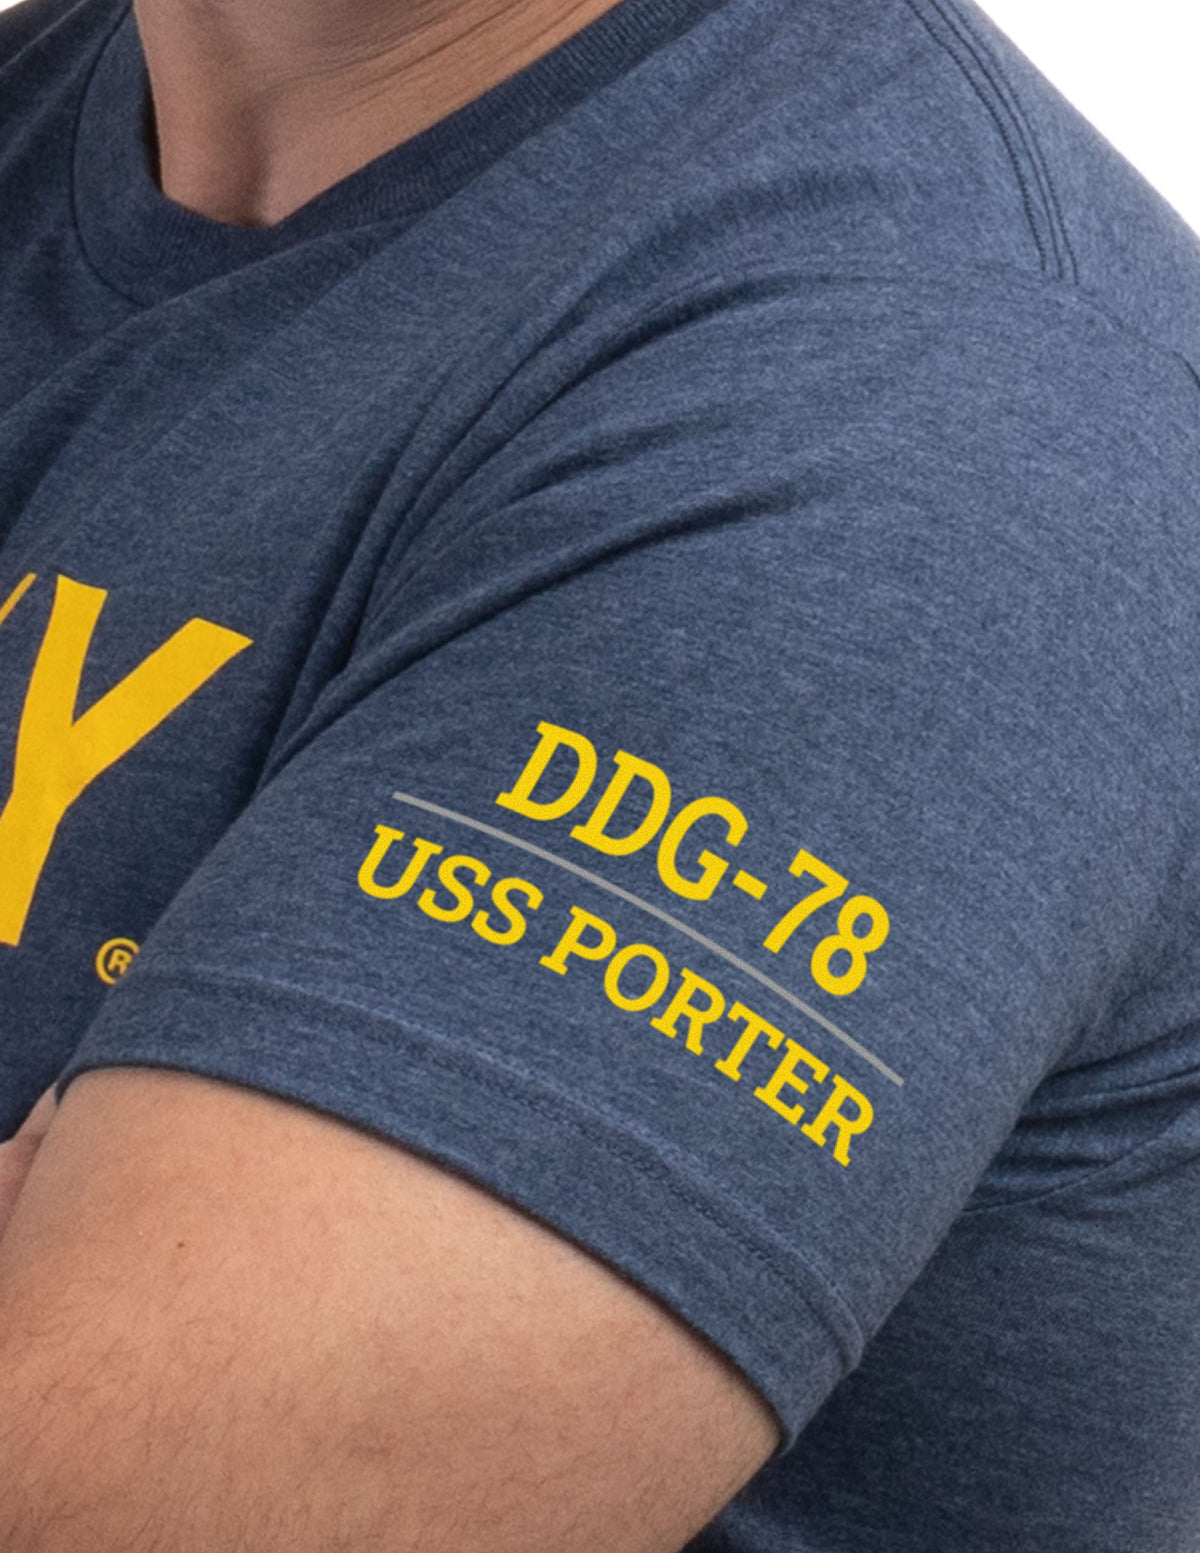 USS Porter, DDG-78 | U.S. Navy Sailor Veteran USN United States Naval T-shirt for Men Women